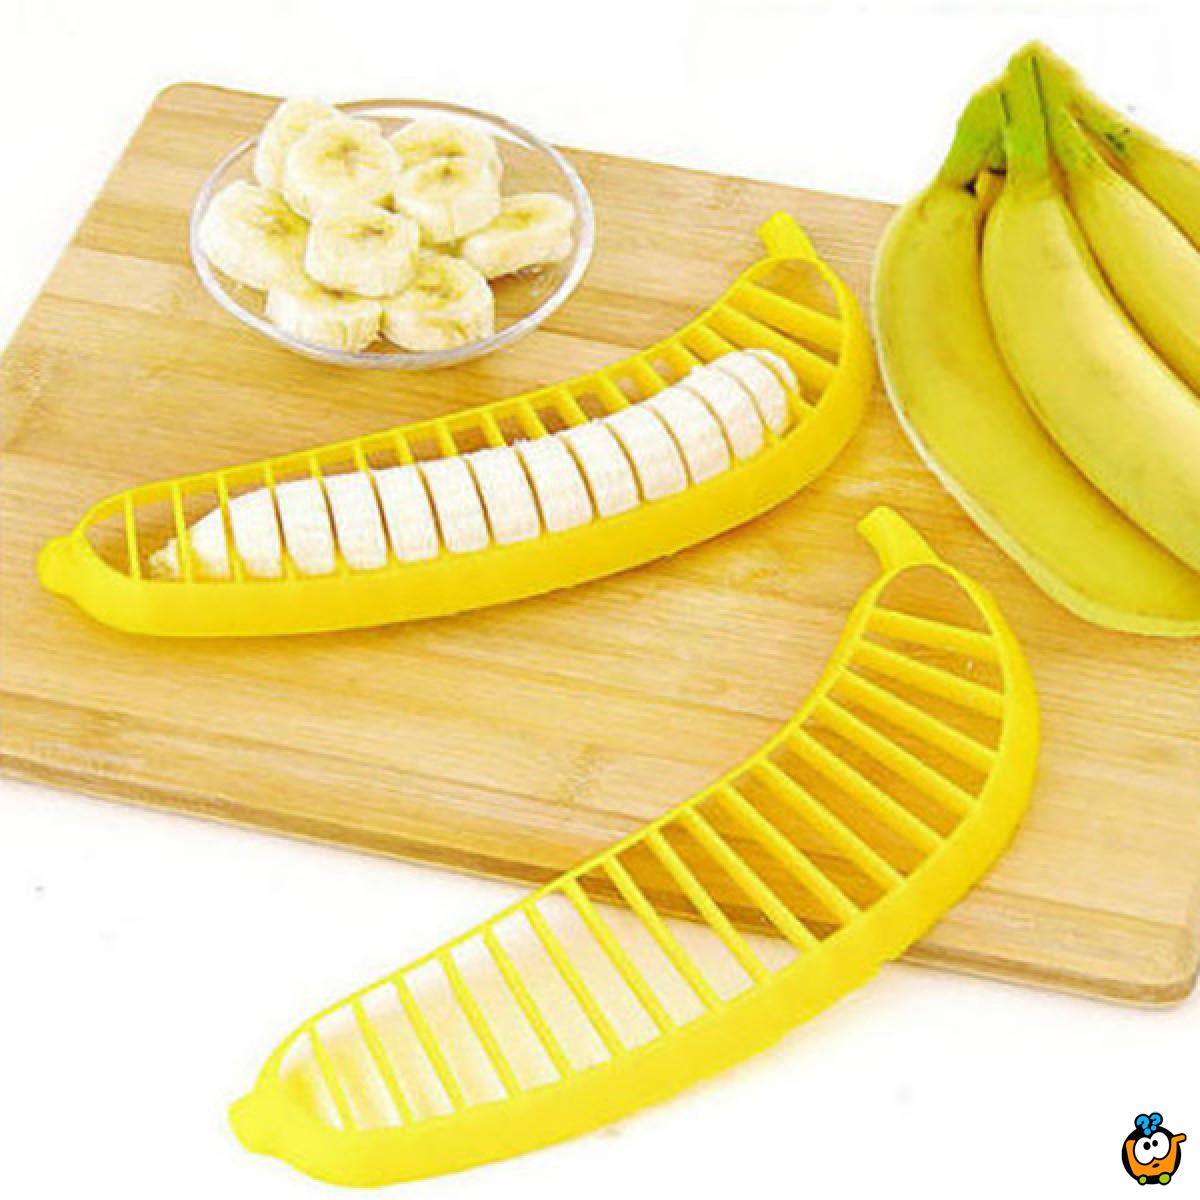 Banana slicer - Rezač banana